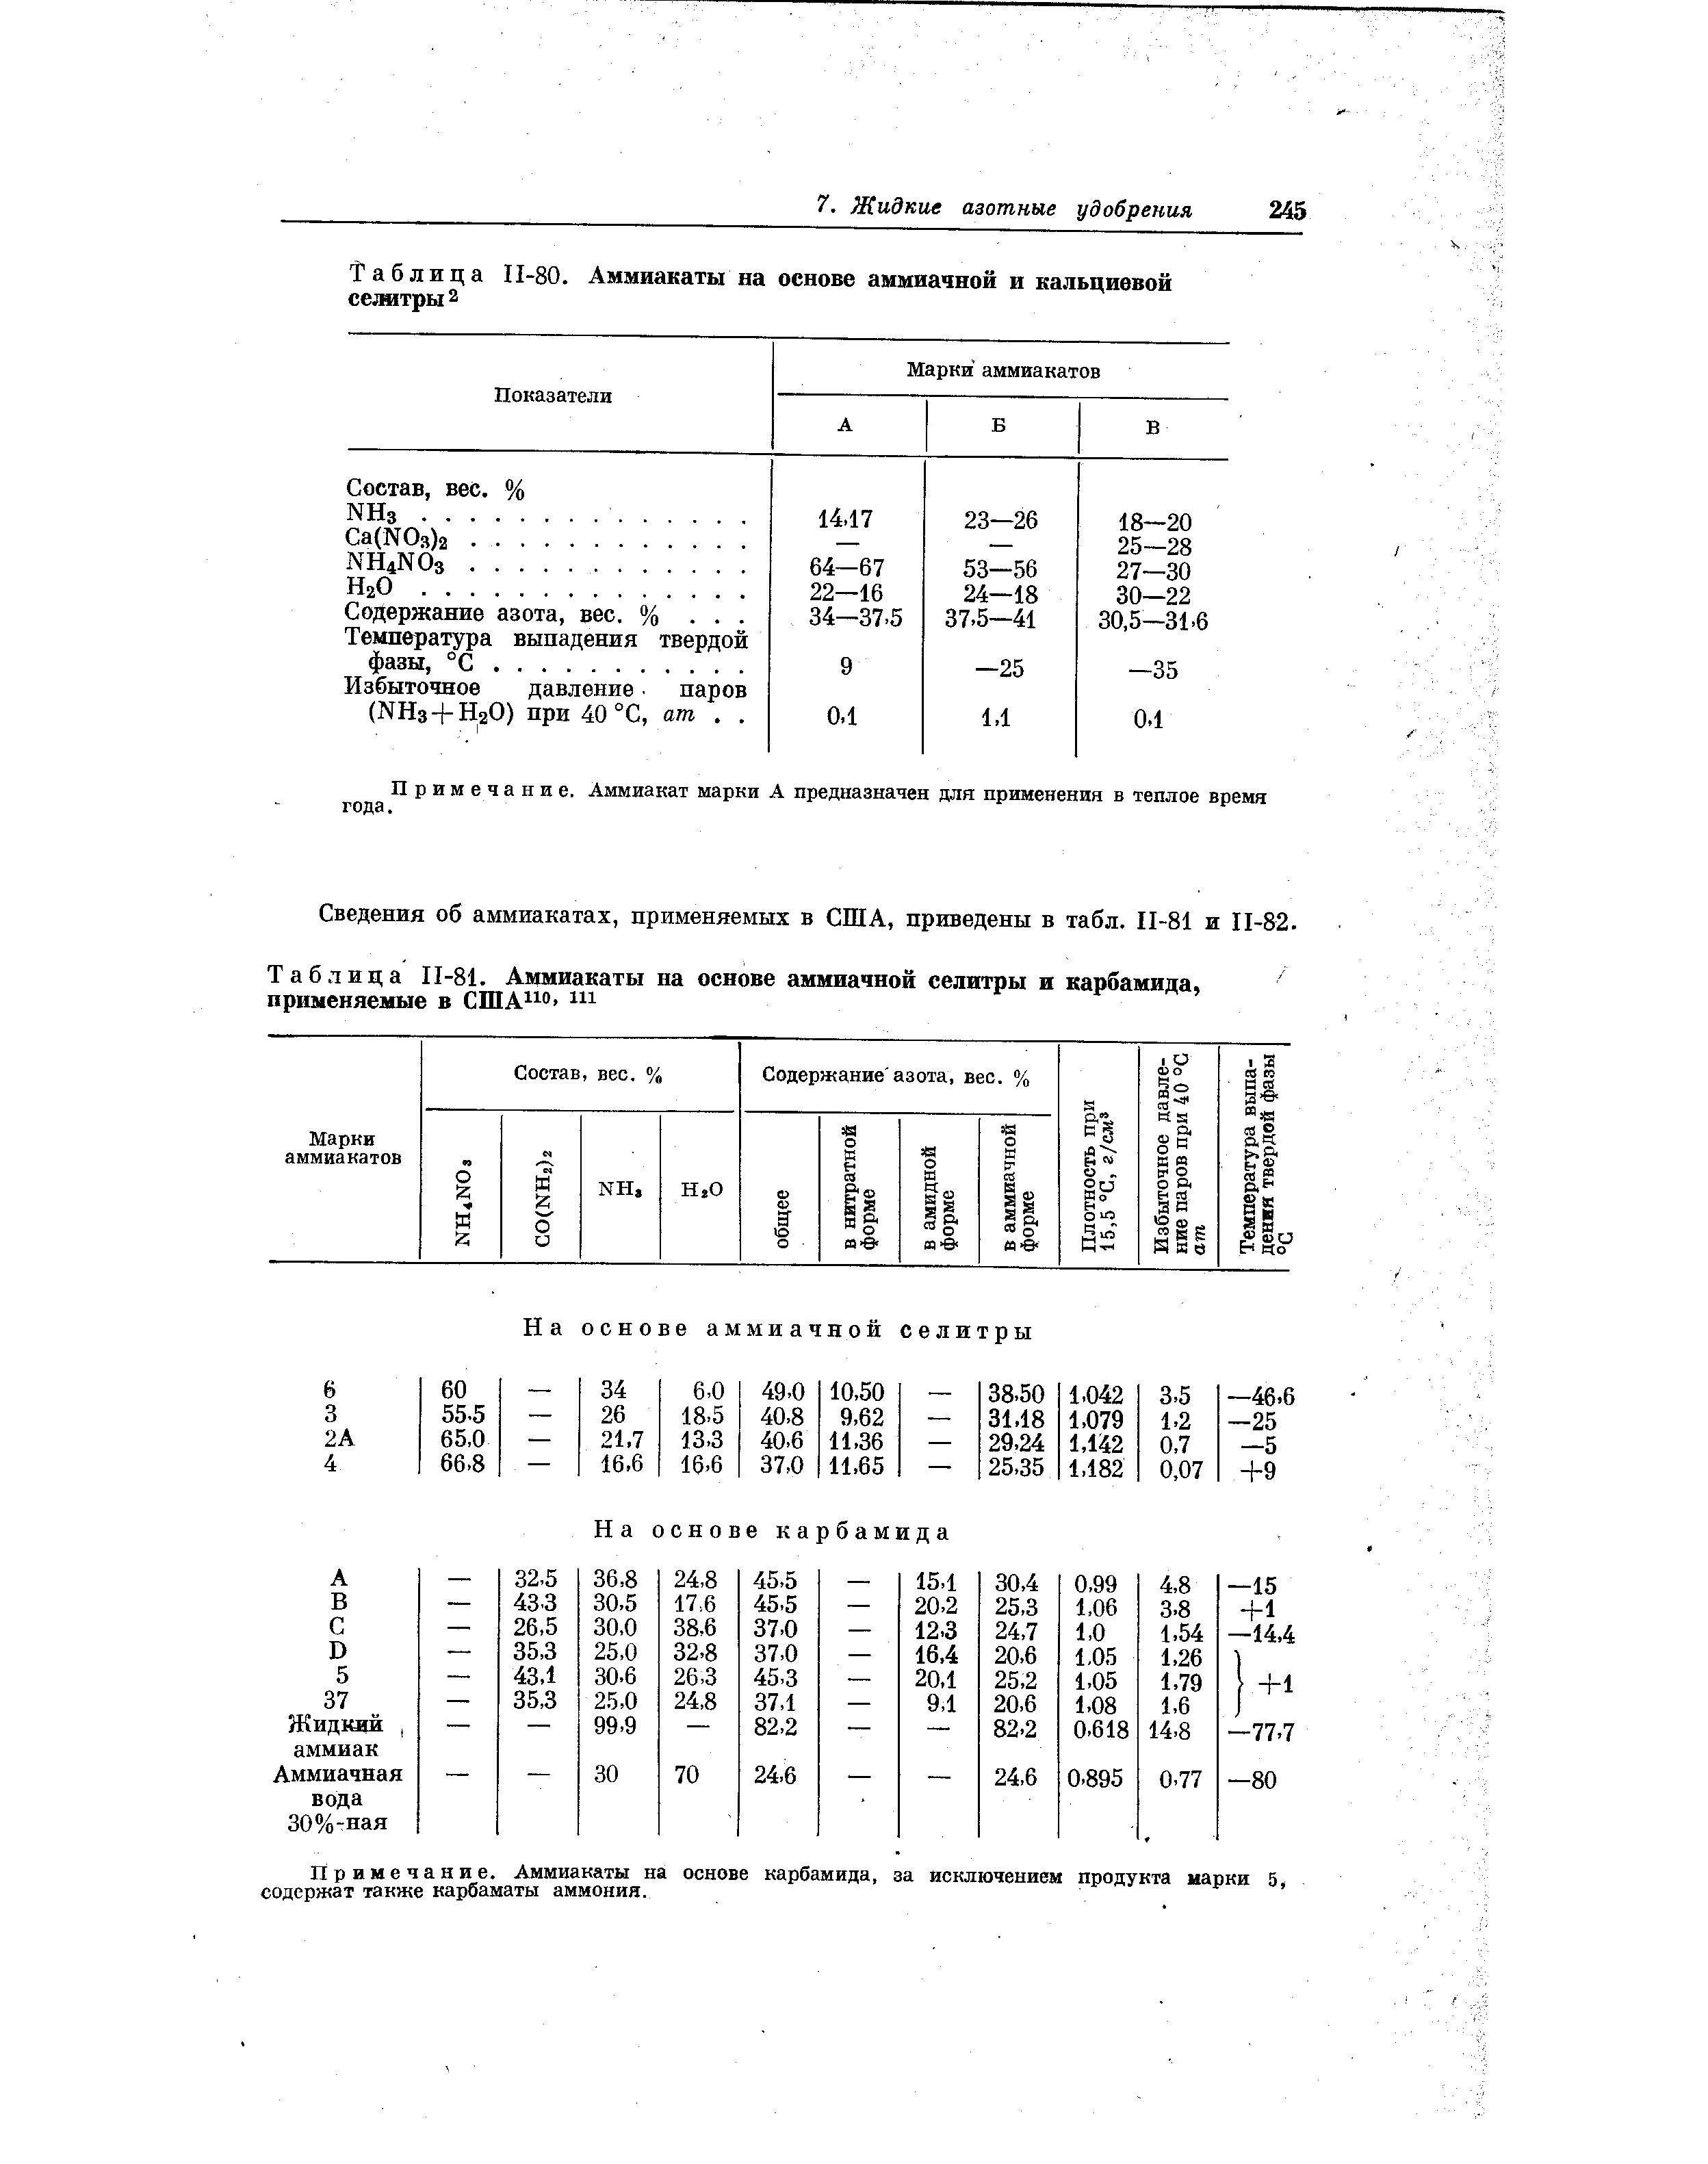 Таблица П-80. Аммиакаты на основе аммиачной и кальциевой селитры 2
